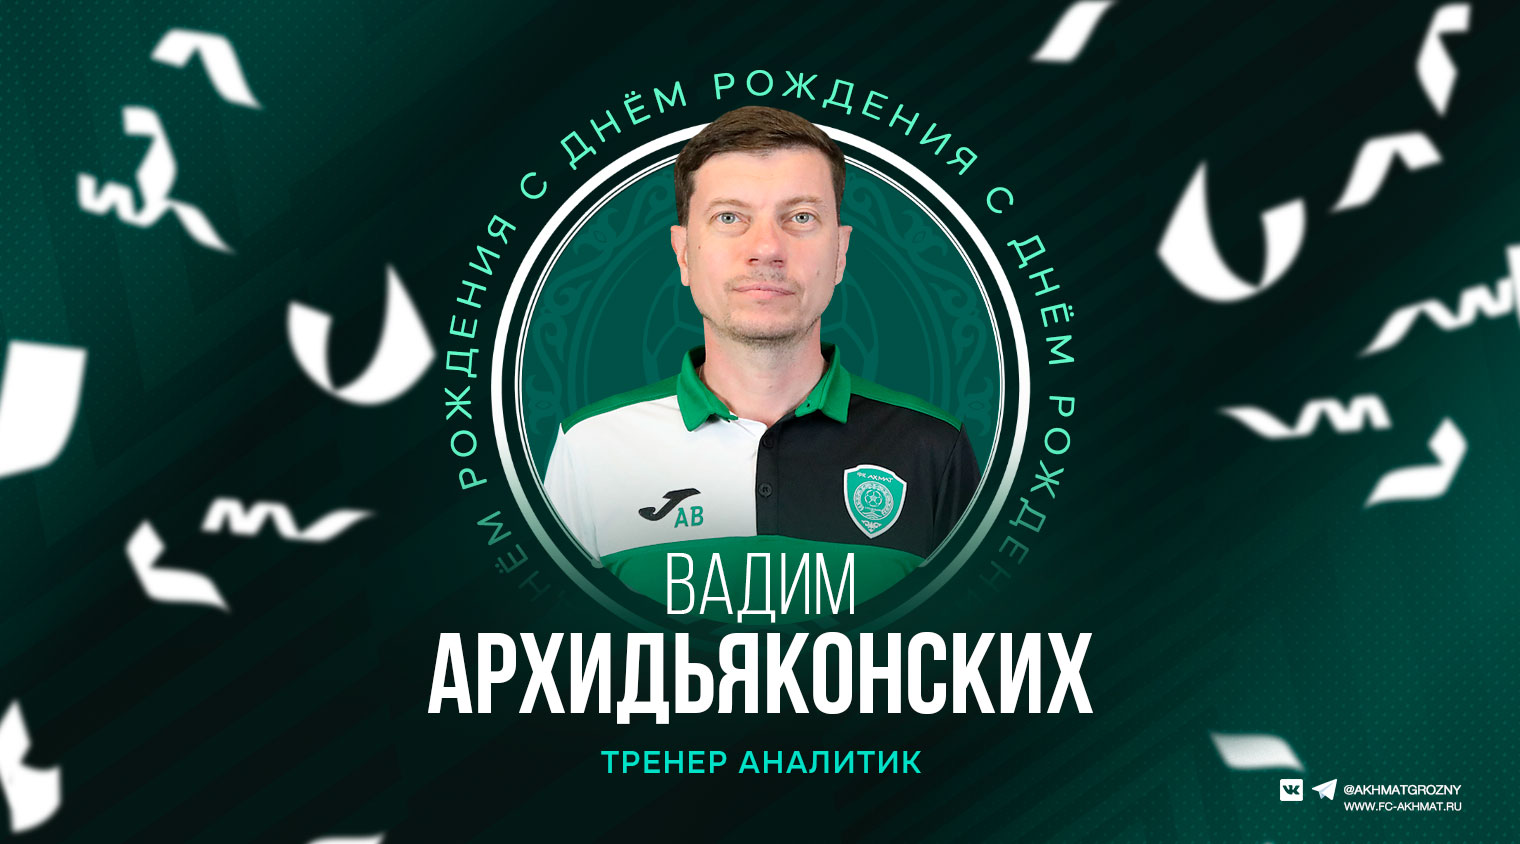 Поздравляем с Днем Рождения Вадима Архидьяконских!